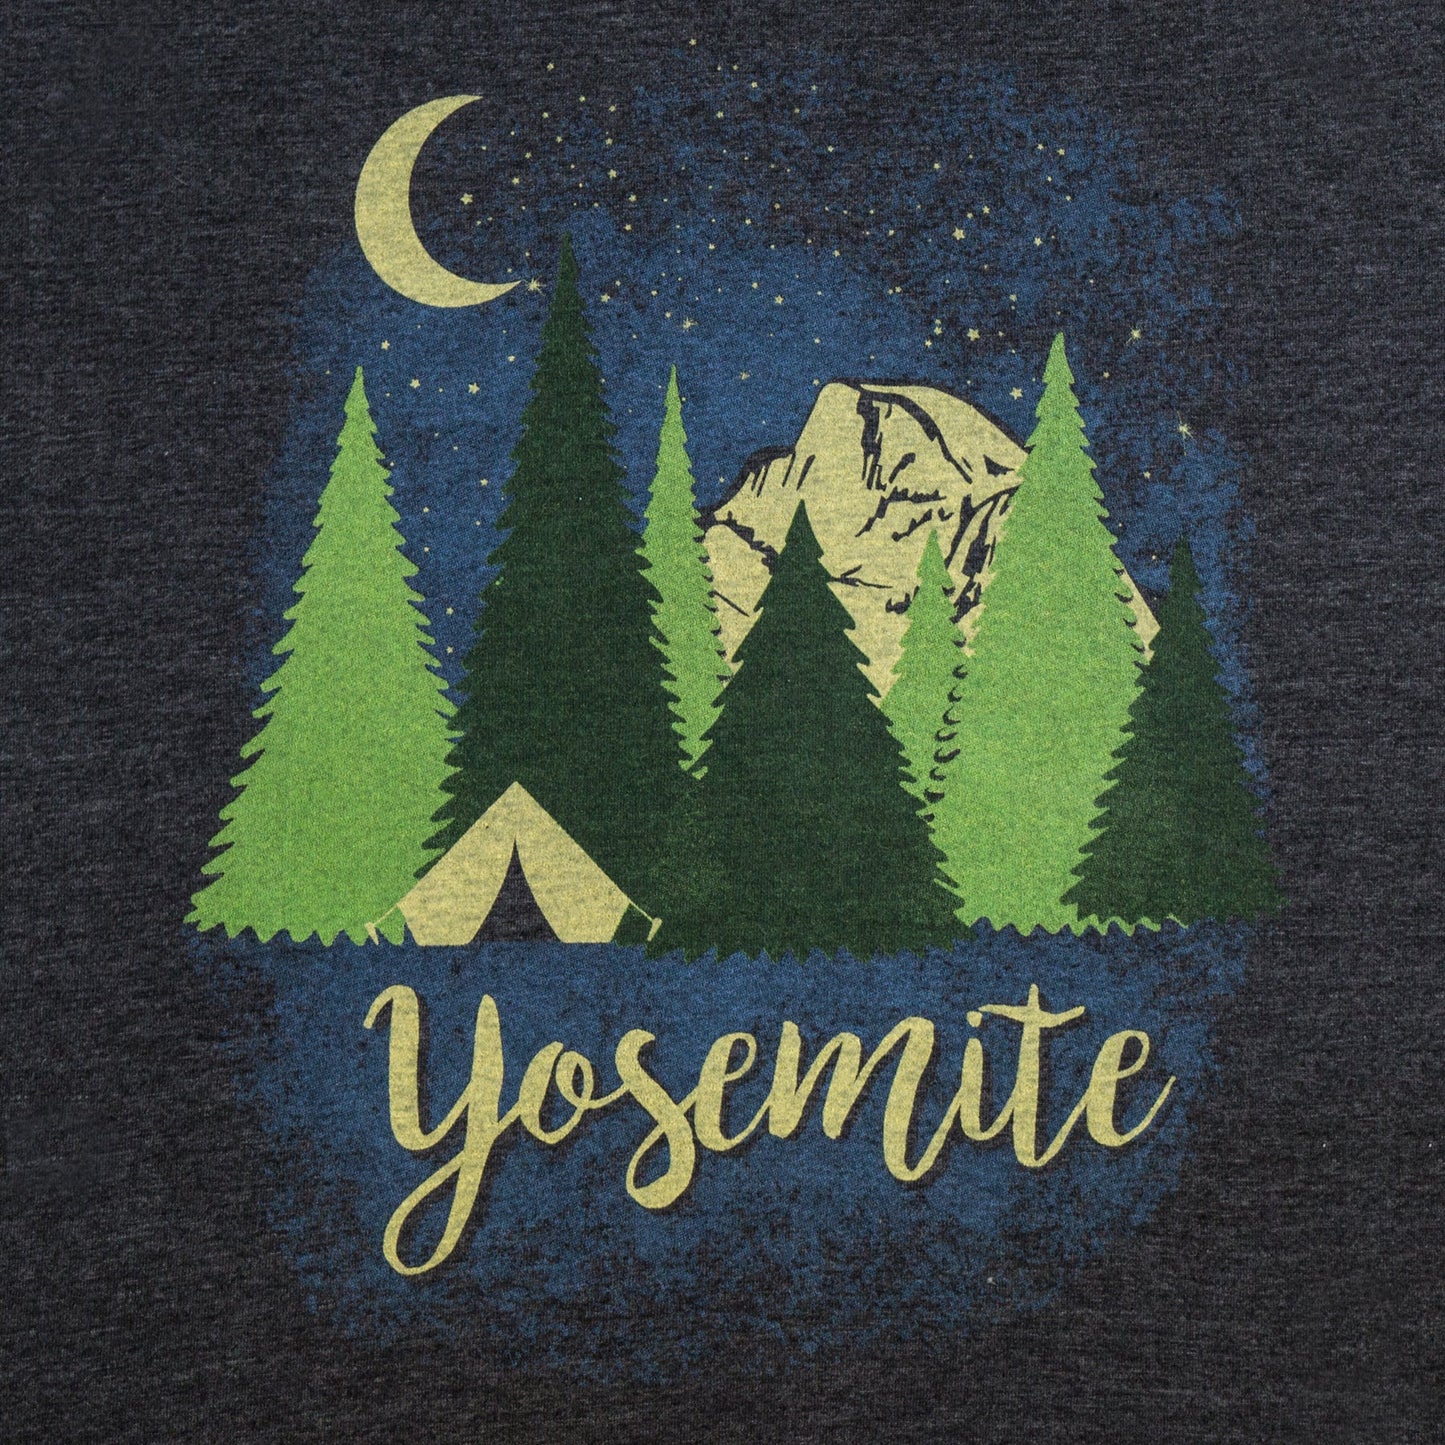 Yosemite Star Camping T-Shirt - Get Deerty